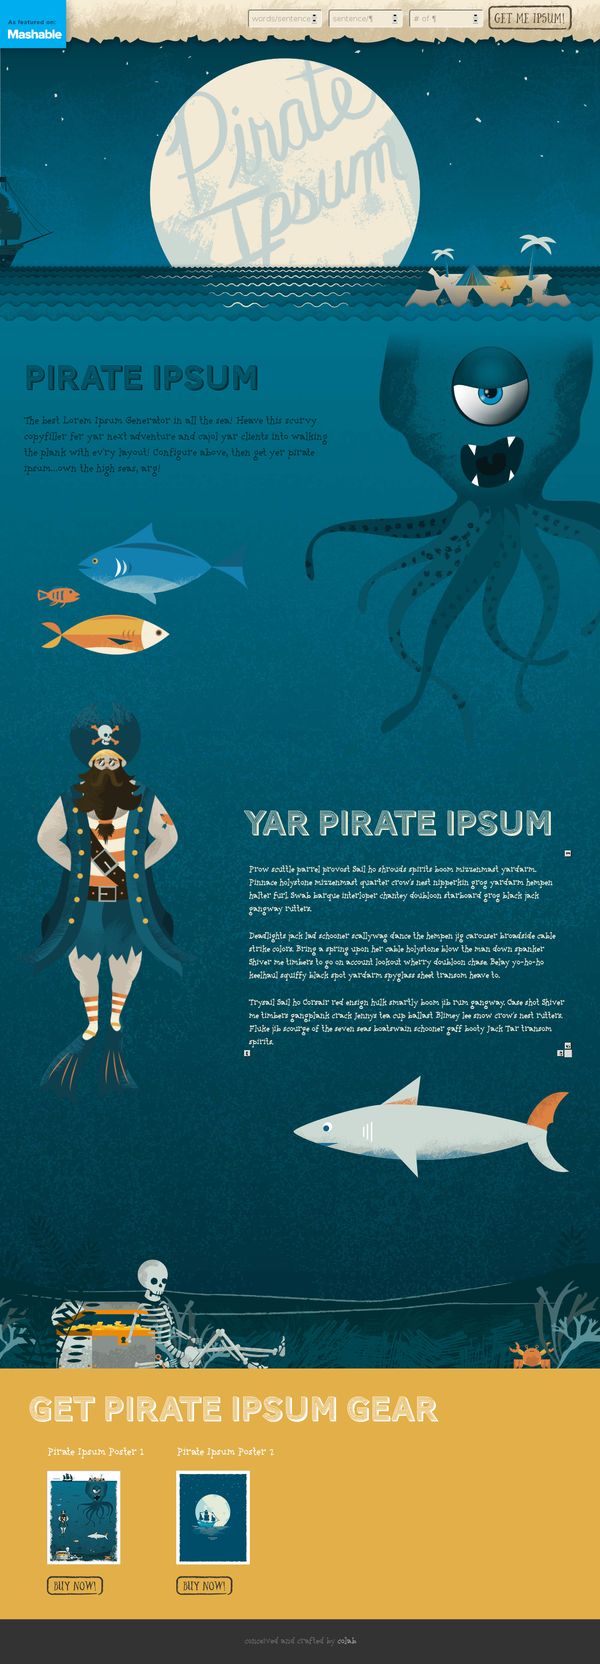 Pirate Ipsum